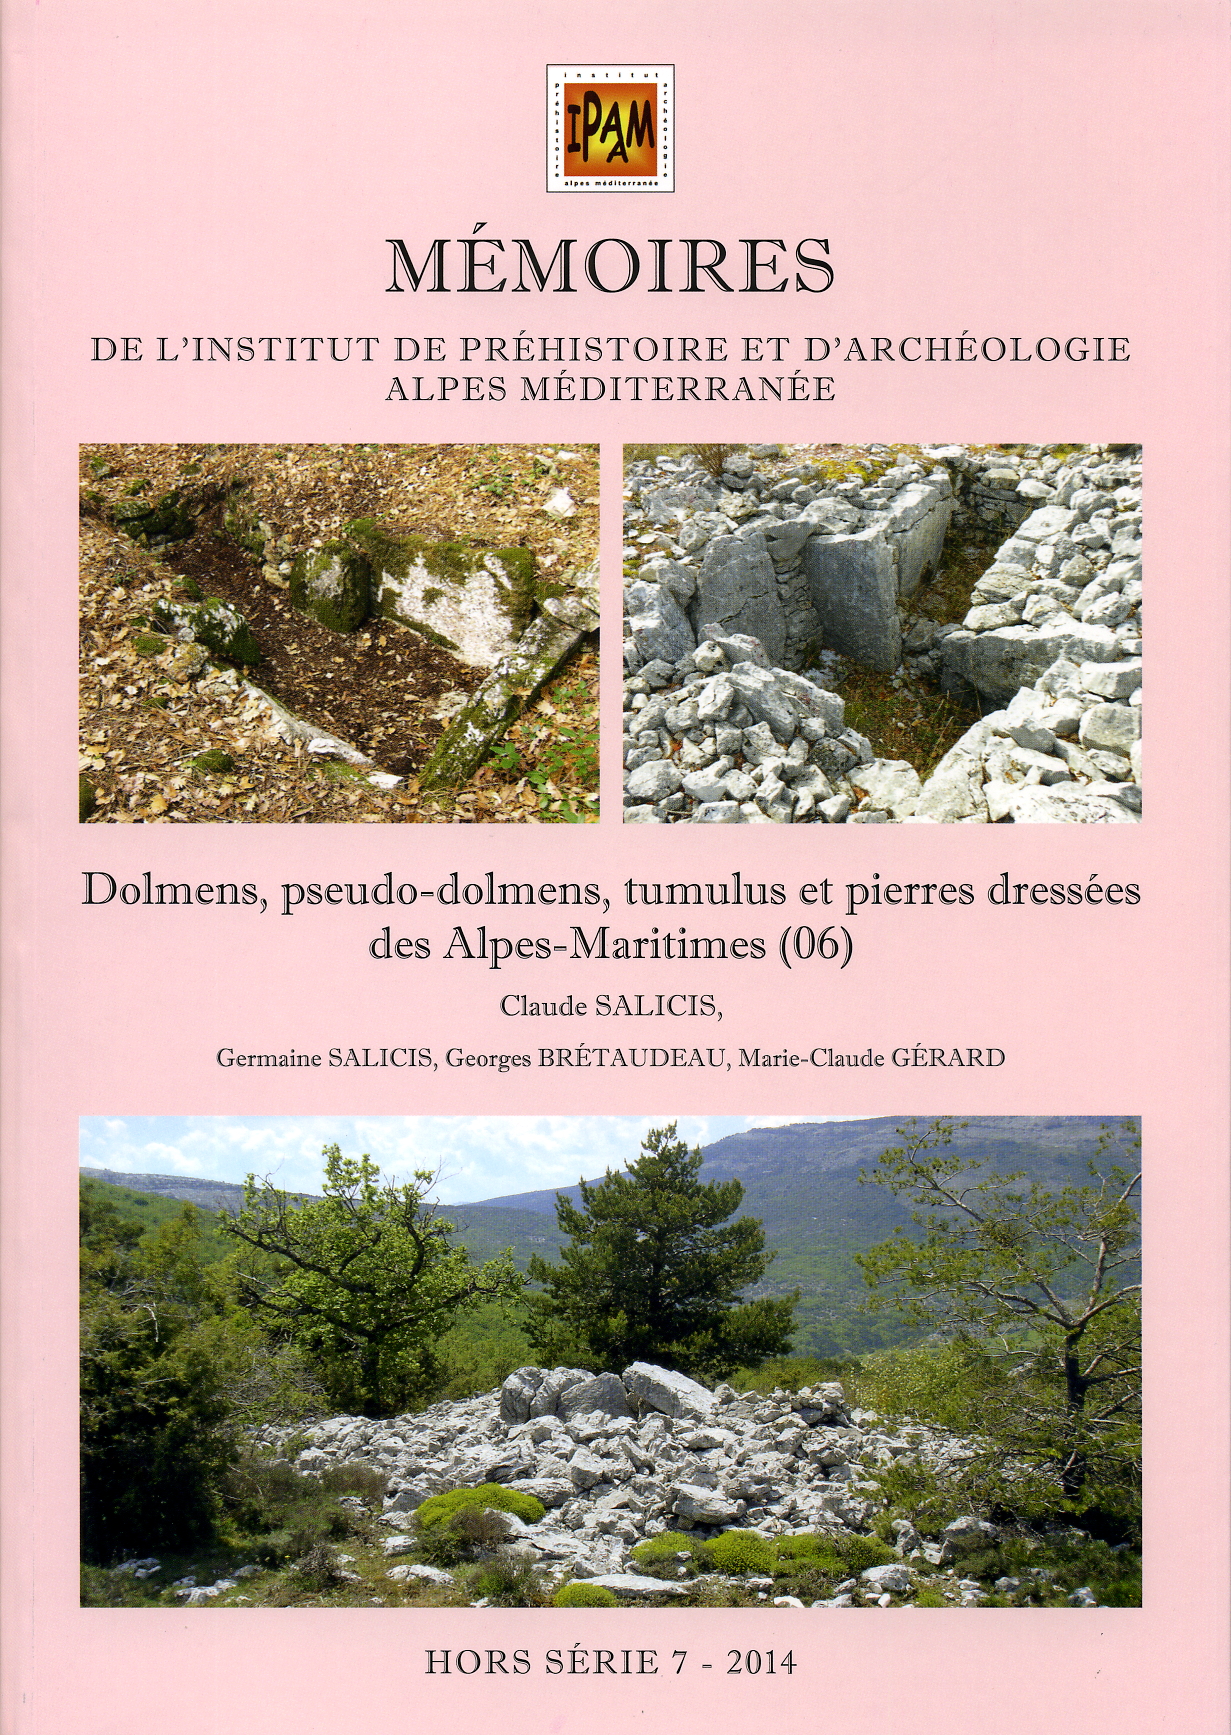 Dolmens, pseudo-dolmens, tumulus et pierres dressées des Alpes-Maritimes (06), (Mémoires de l'IPAAM, Hors Série 7), 2014, 304 p., ill. coul.